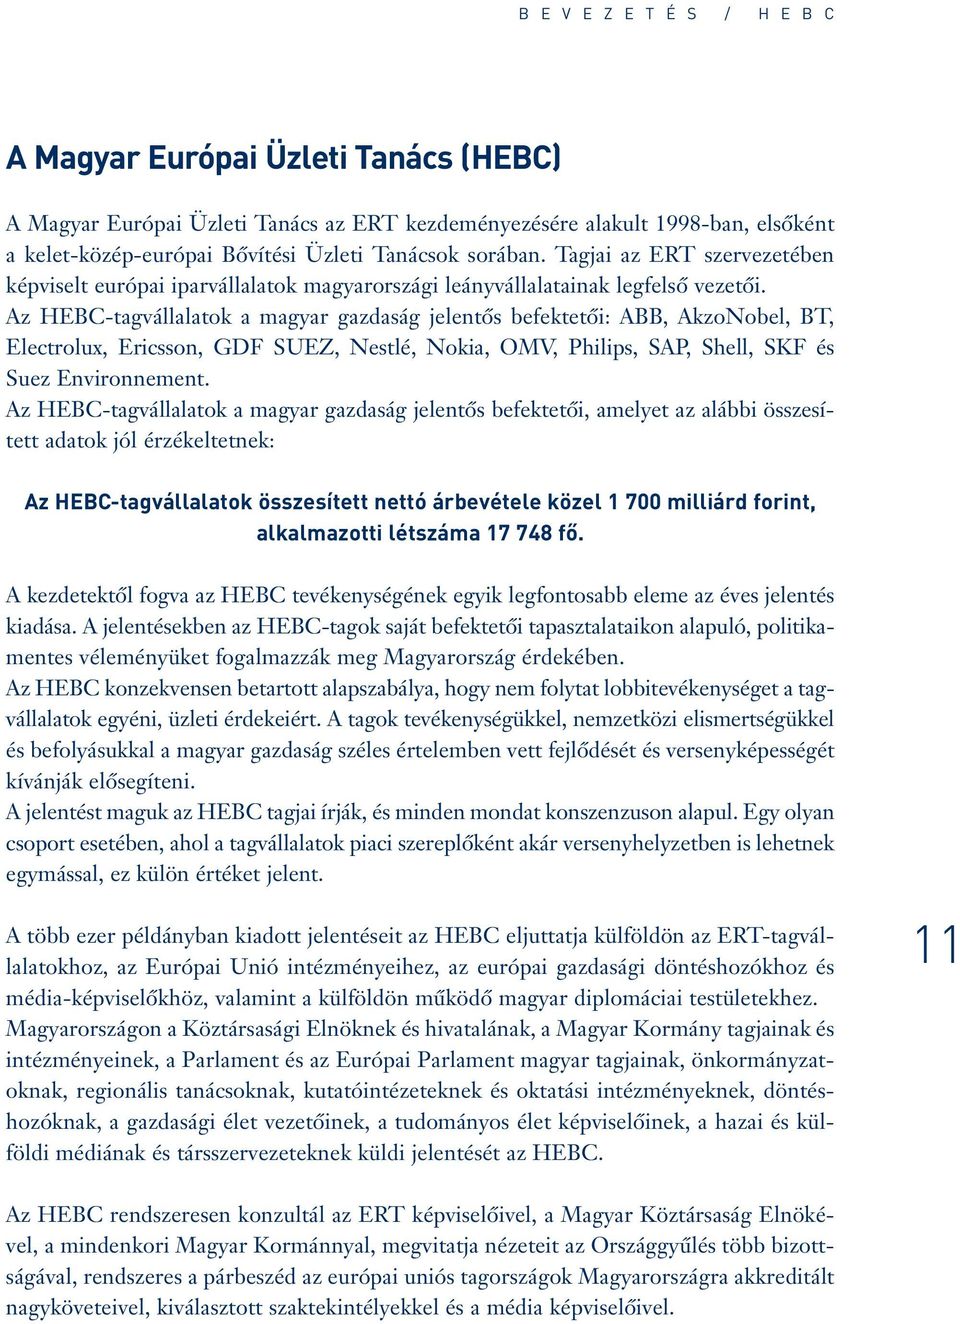 Az HEBC-tagvállalatok a magyar gazdaság jelentôs befektetôi: ABB, AkzoNobel, BT, Electrolux, Ericsson, GDF SUEZ, Nestlé, Nokia, OMV, Philips, SAP, Shell, SKF és Suez Environnement.